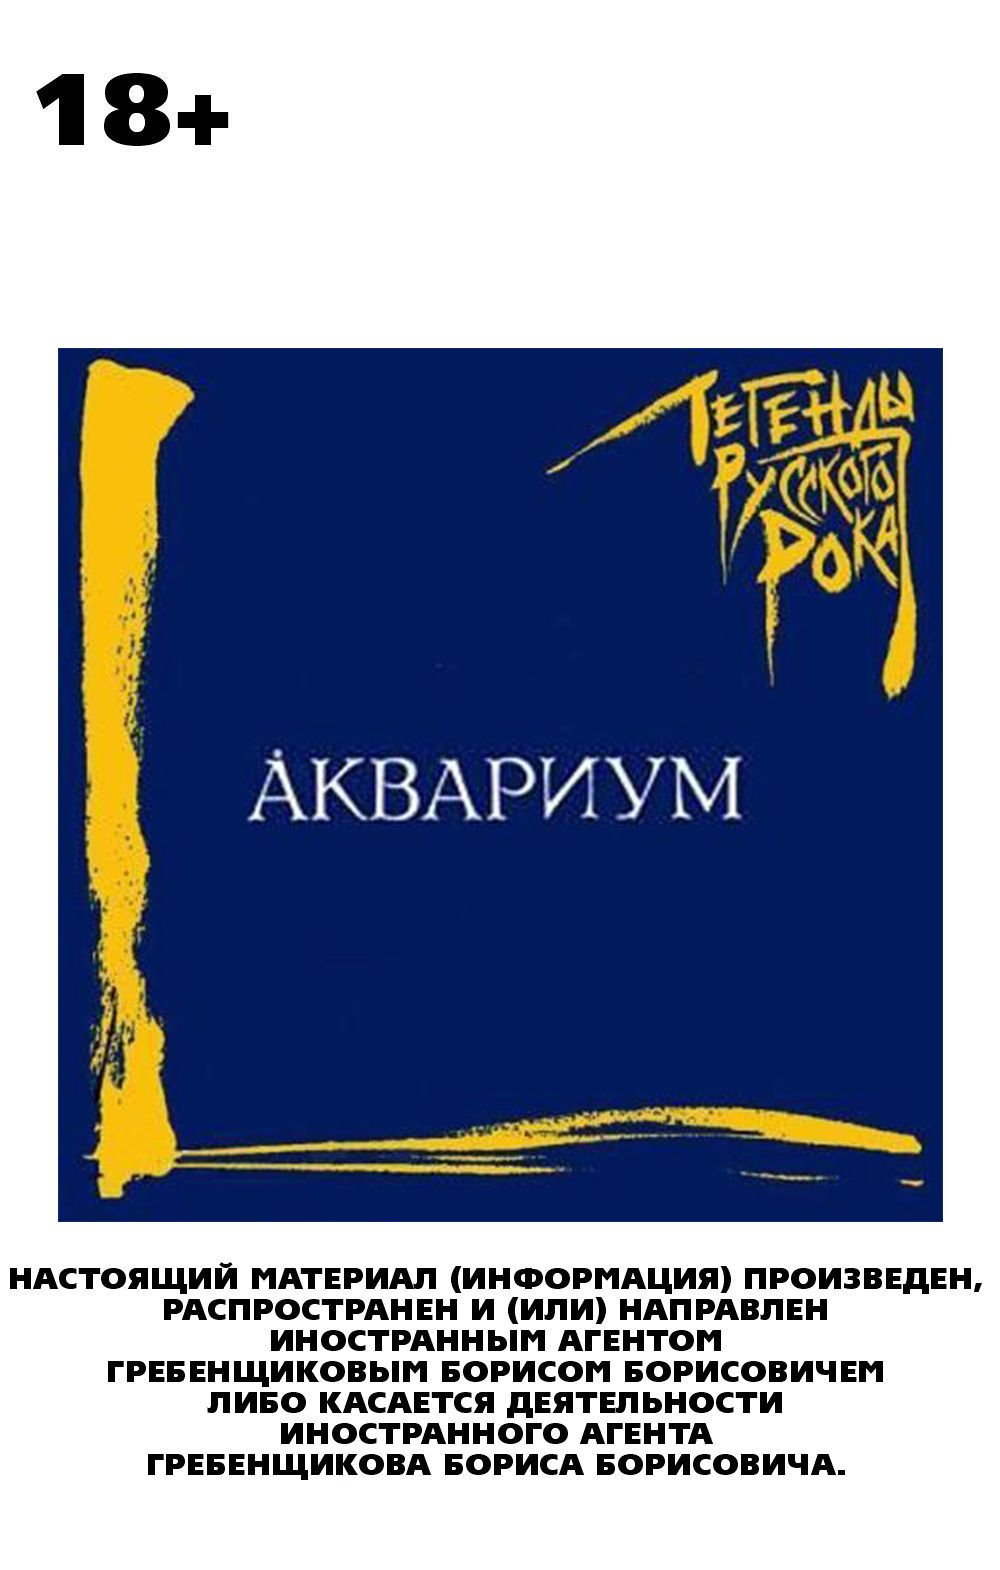 Аквариум: Легенды русского рока (CD)